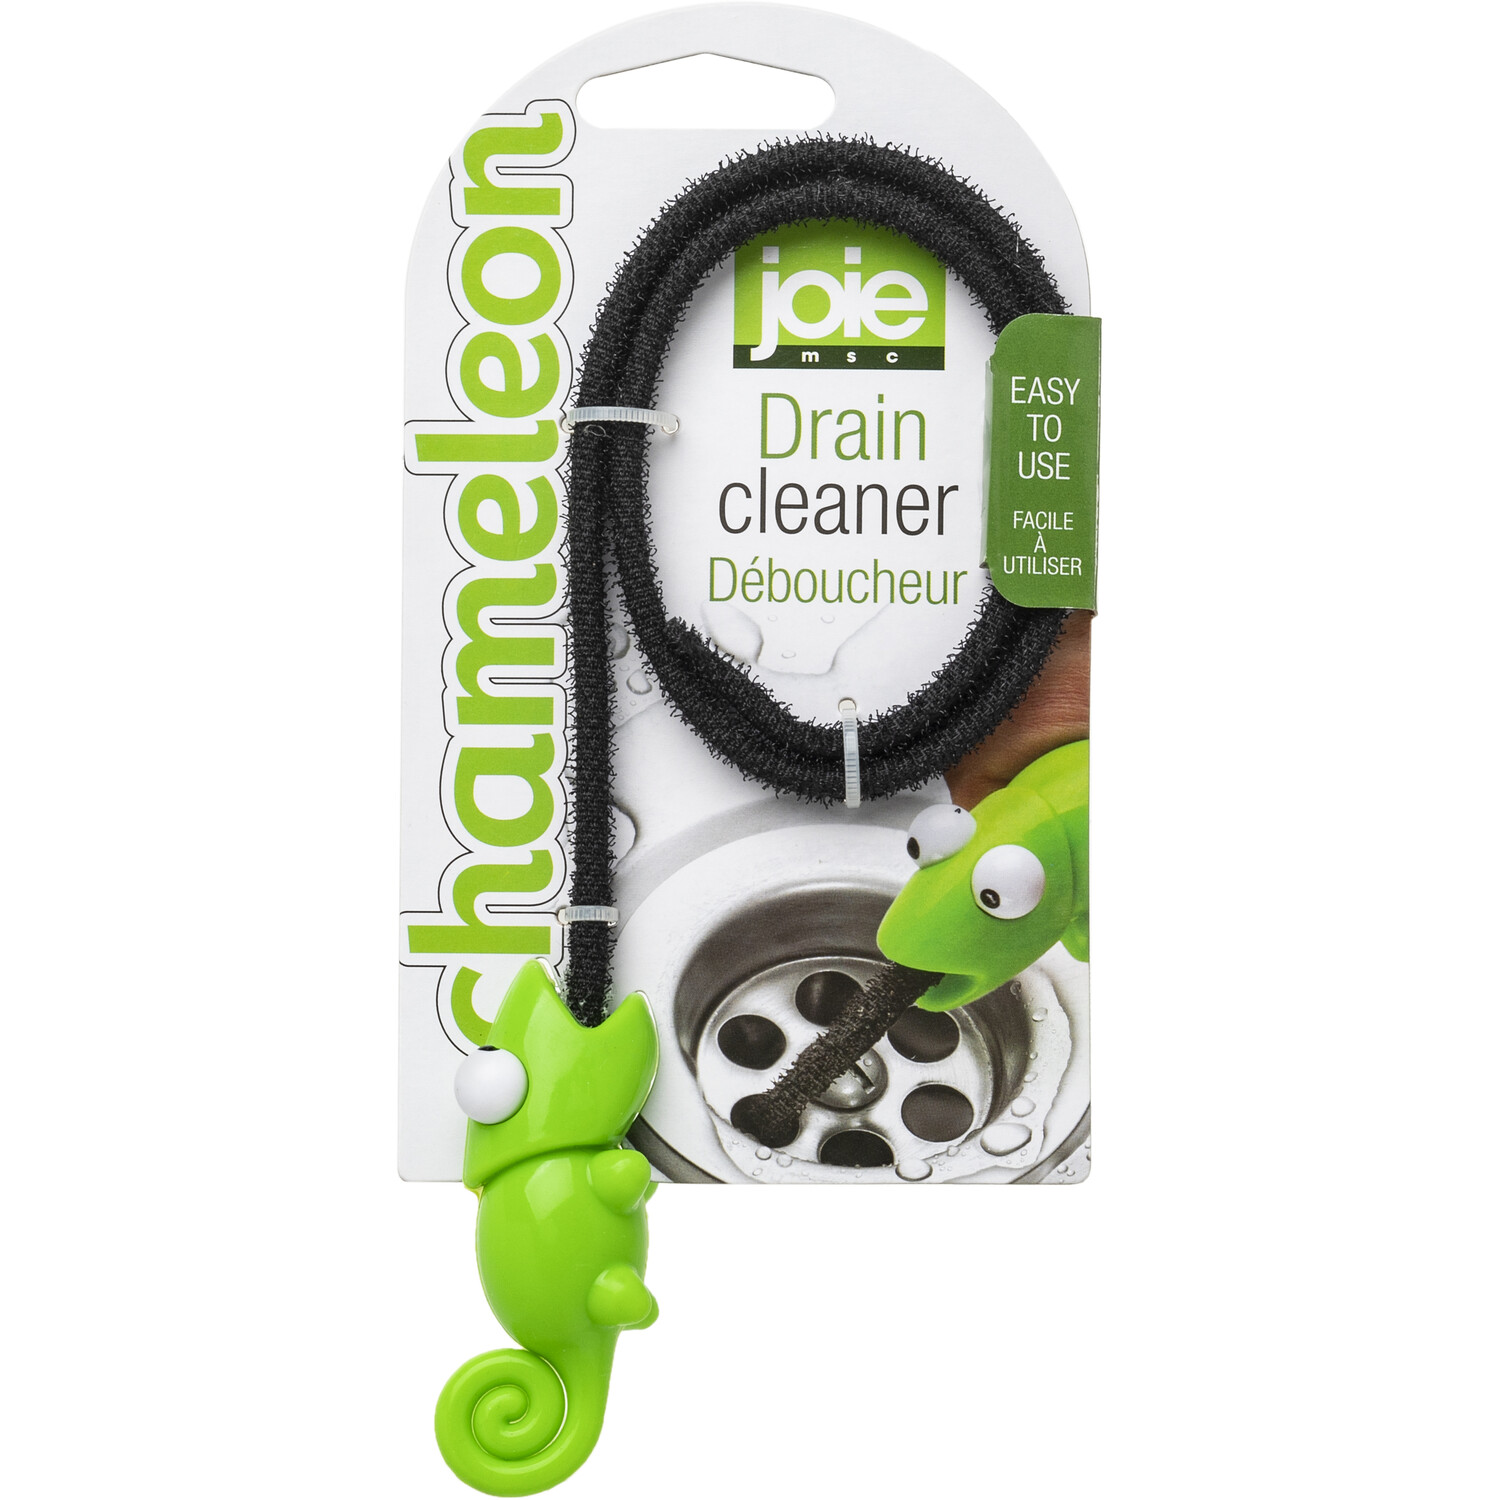 Joie Chameleon Green Drain Cleaner Image 1